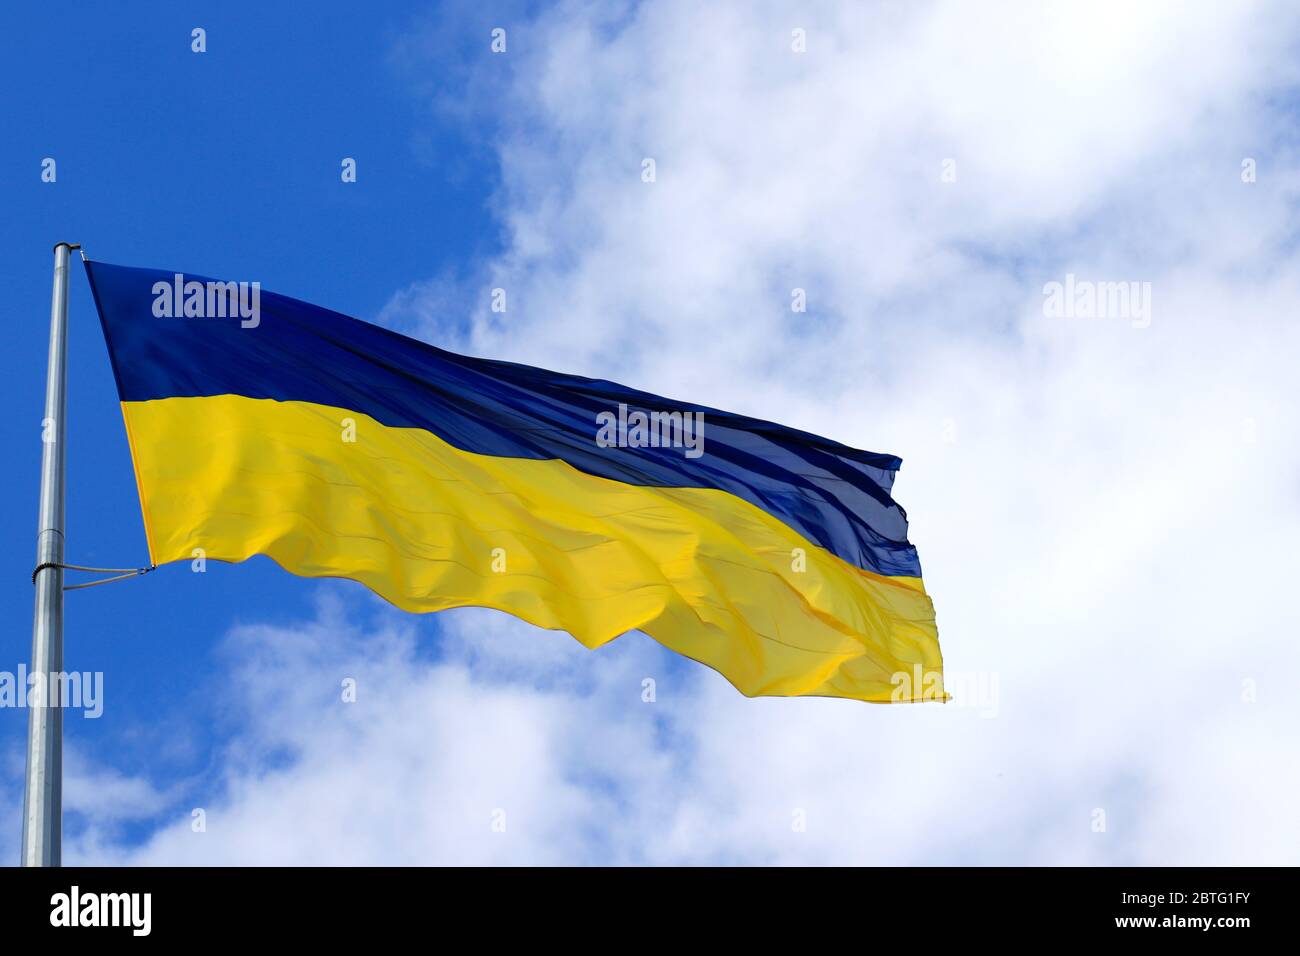 Le grand drapeau national de l'Ukraine vole dans le ciel. Grand drapeau ukrainien jaune bleu dans la ville de Dnepr, indépendance, Constitution, jour du défenseur Banque D'Images